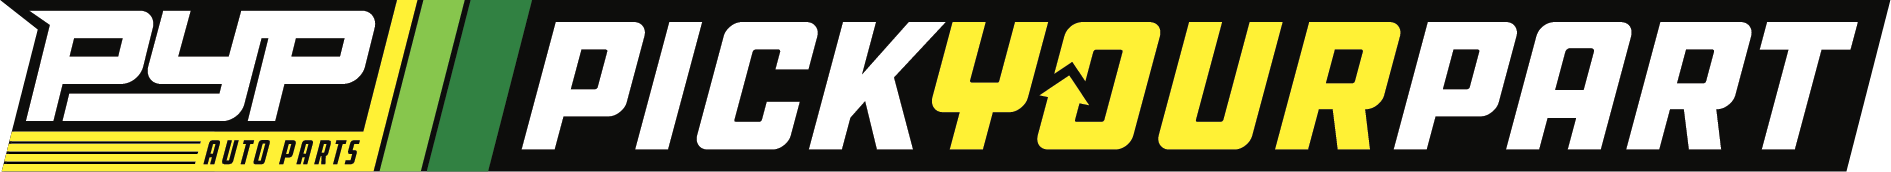 LKQ Pick Your Part logo